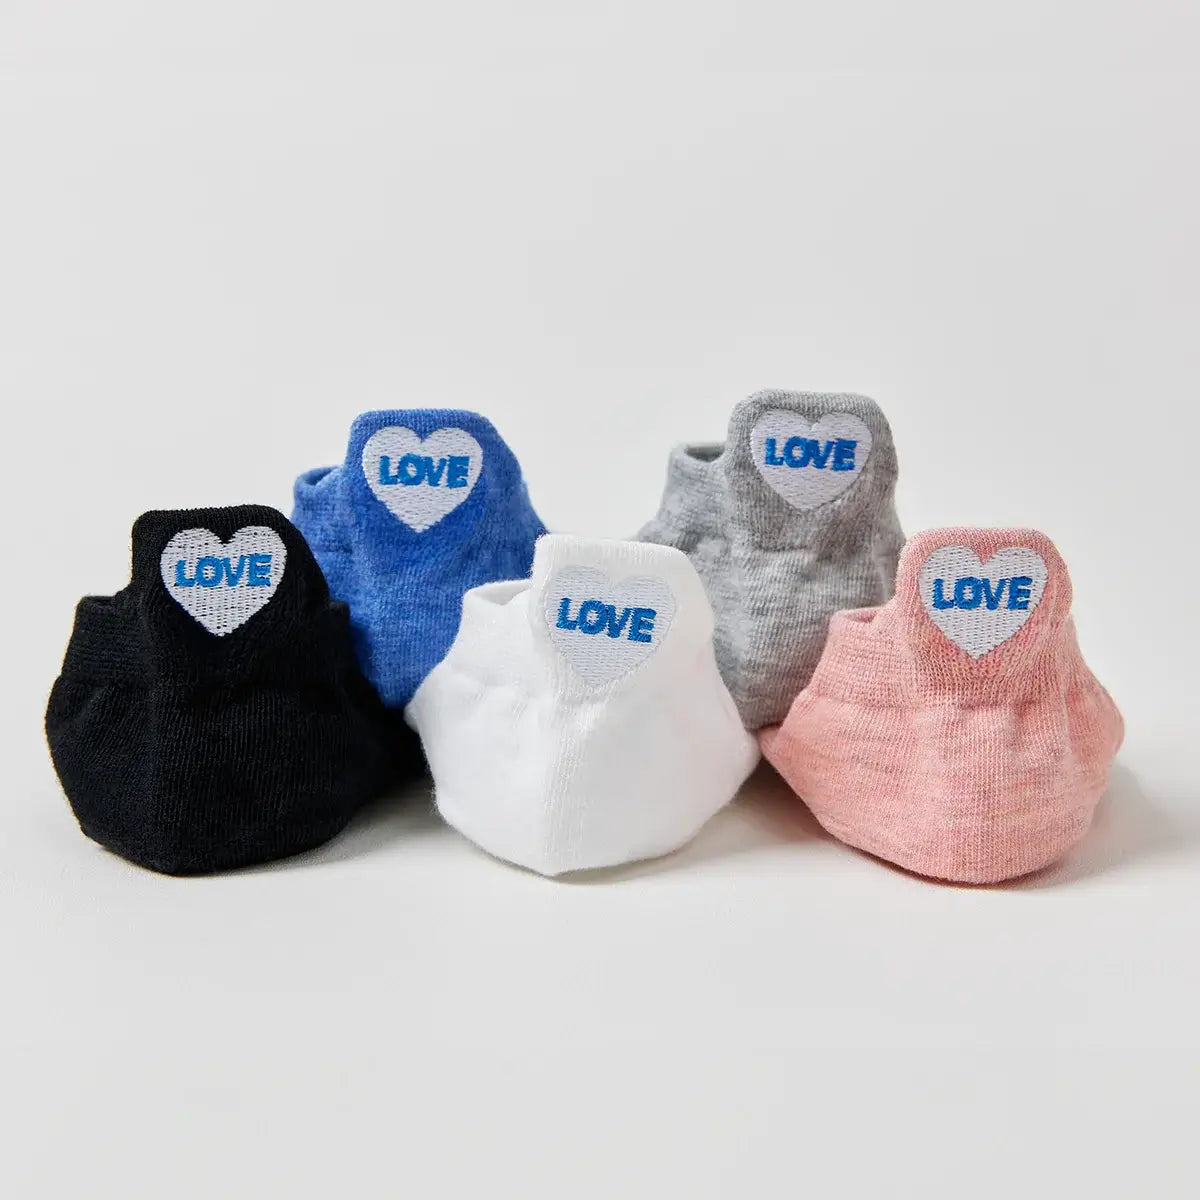 Chaussettes en coton à languette cœur love pour femme | Chaussettes douces et respirantes | Un cadeau parfait pour les femmes de tous âges | Disponibles à un prix abordable.